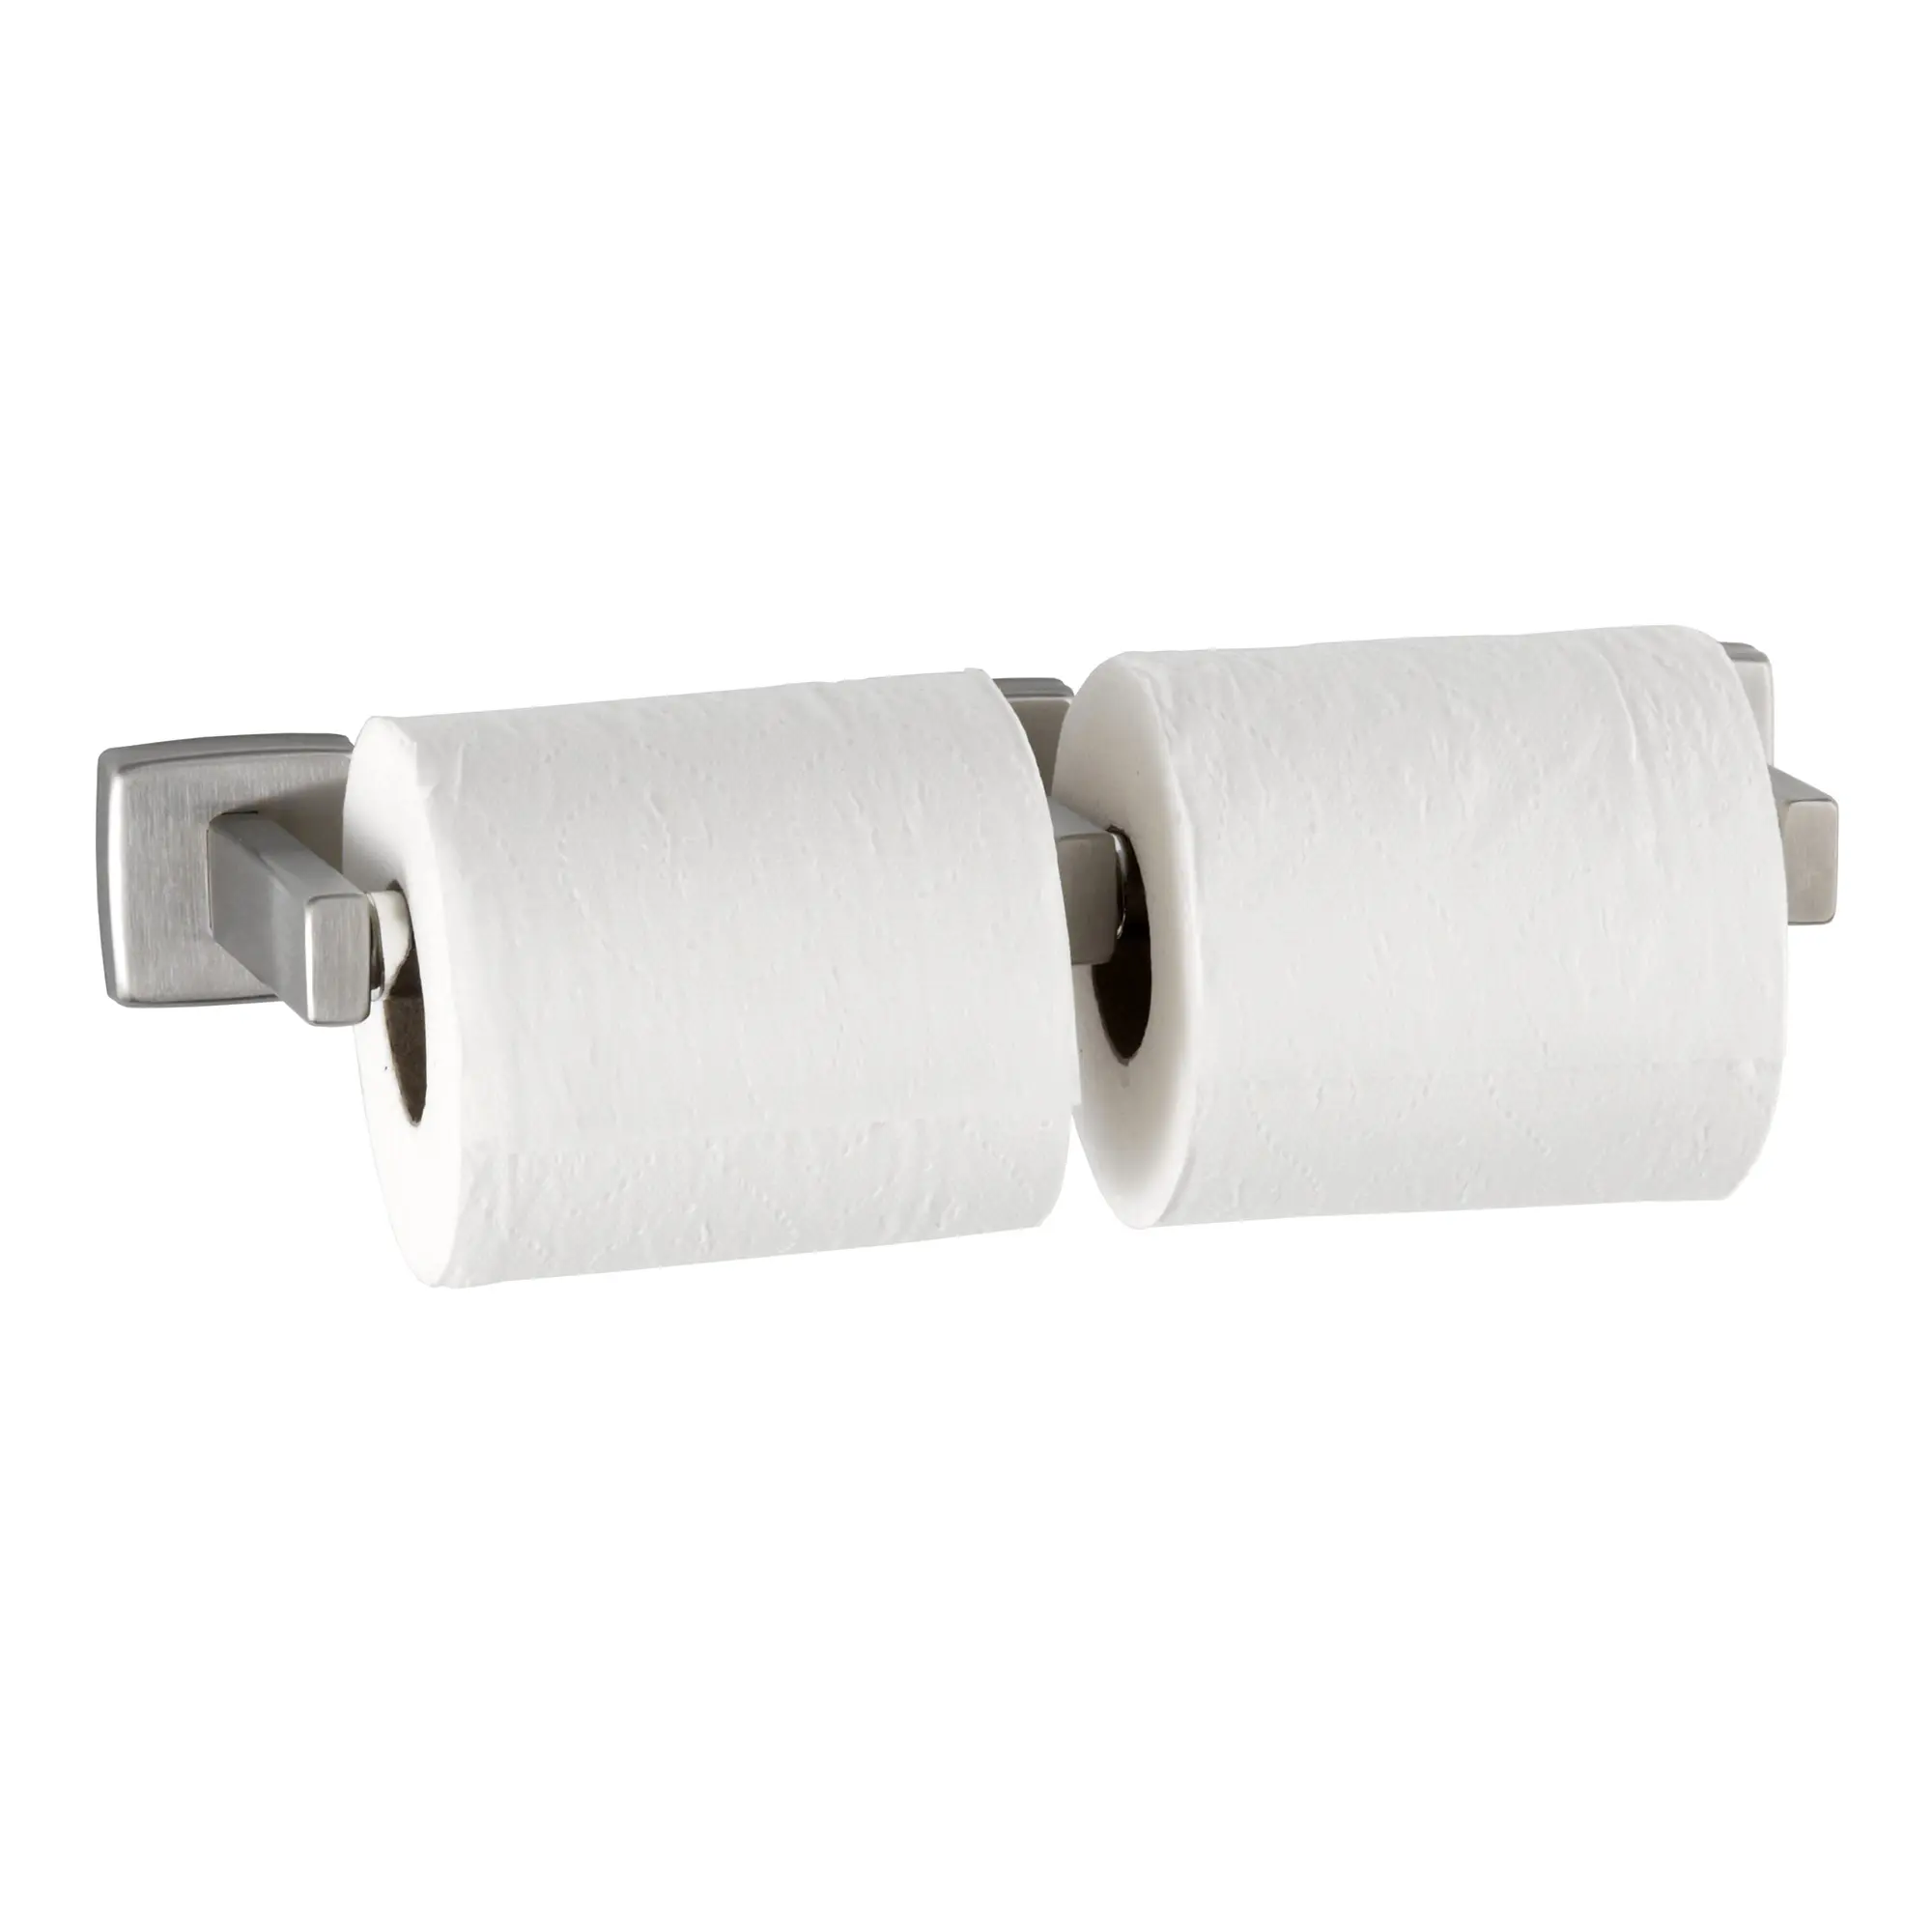 Bobrick B-686 Toilettenpapierrollenhalter für zwei Rollen